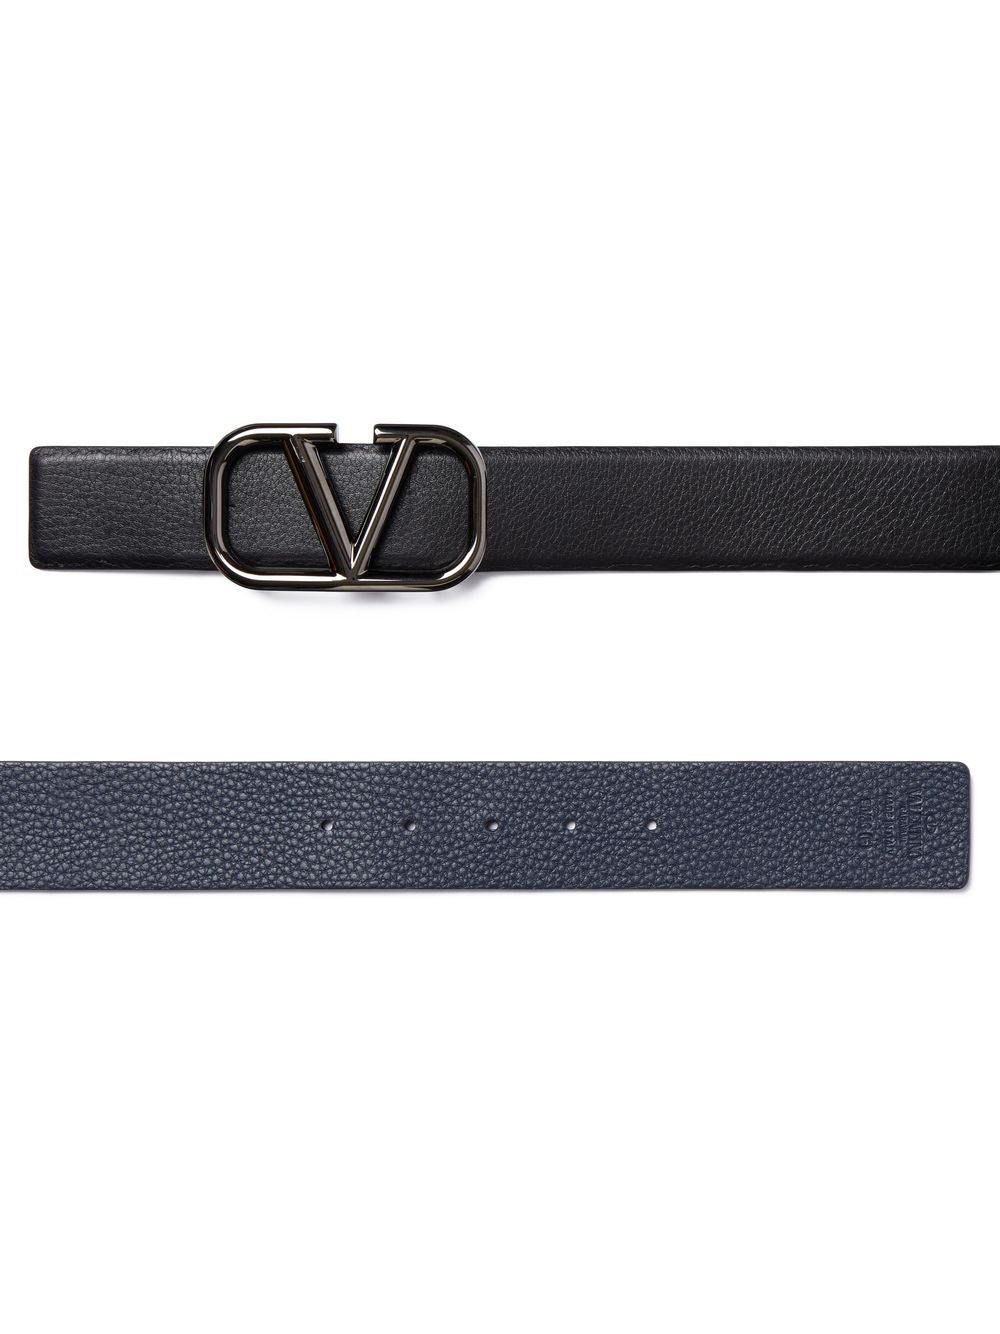 VLogo Signature 40mm reversible belt<BR/><BR/><BR/>